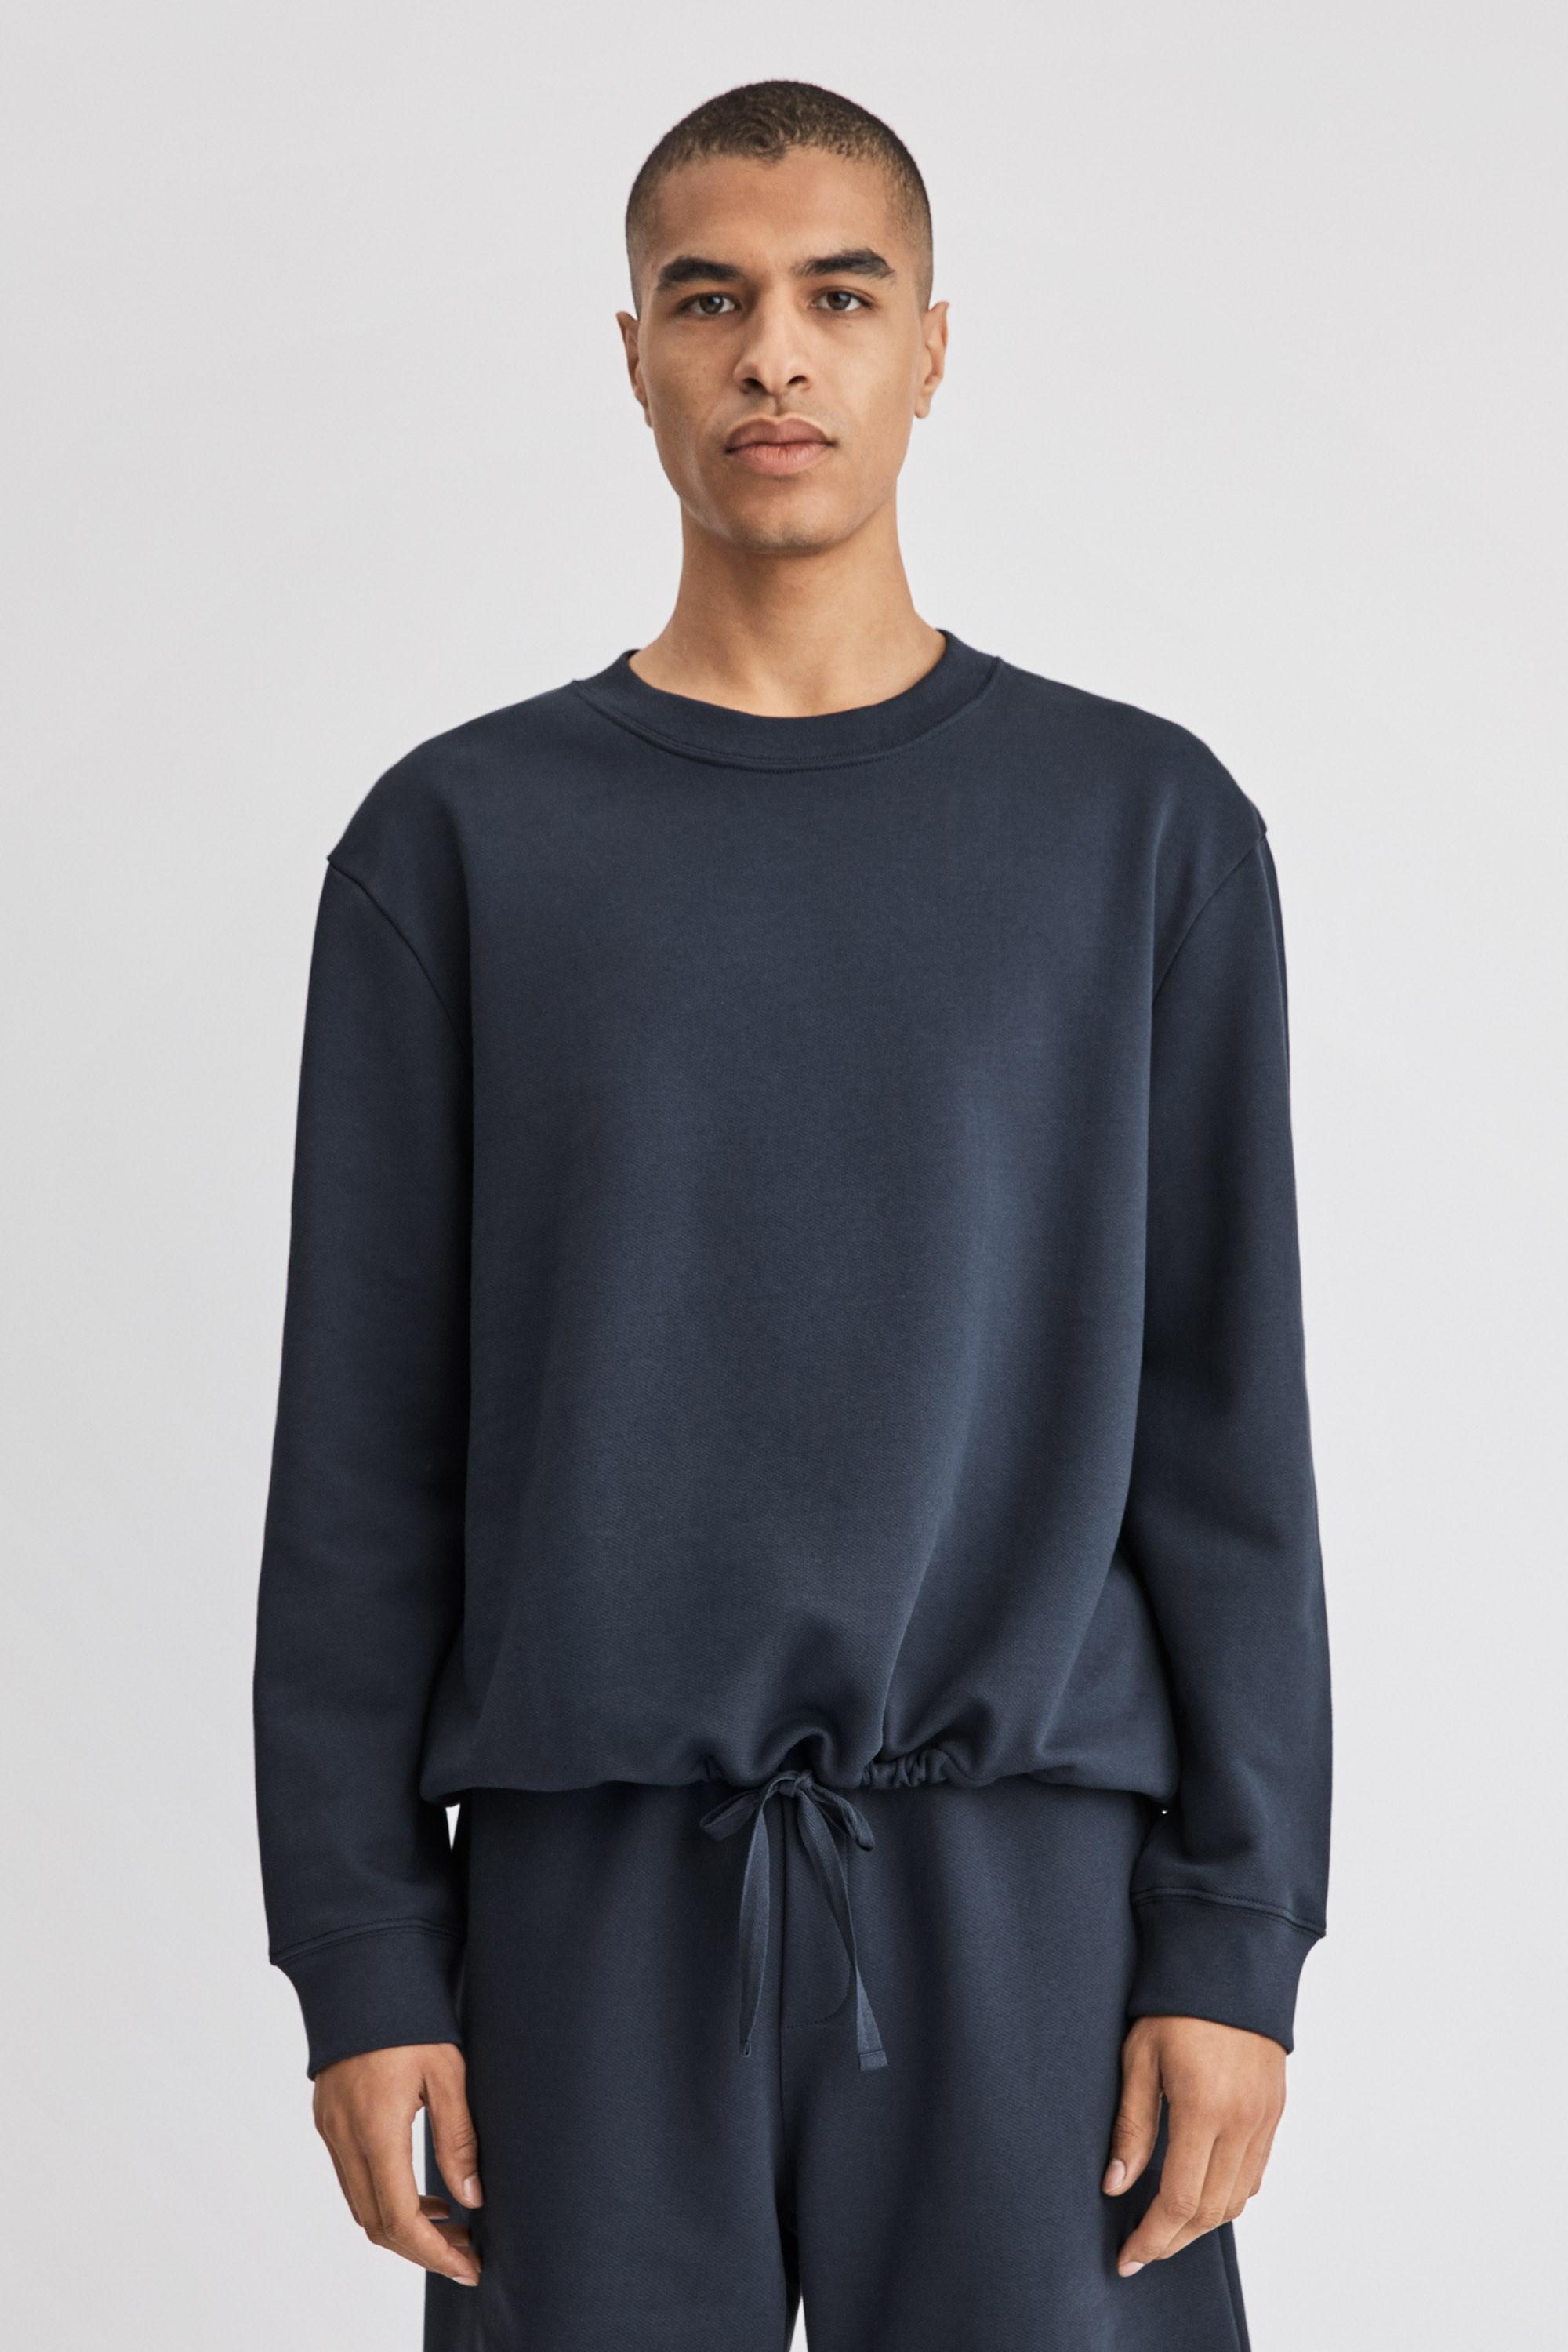 Filippa K Cotton Felix Sweater in Blue for Men - Lyst